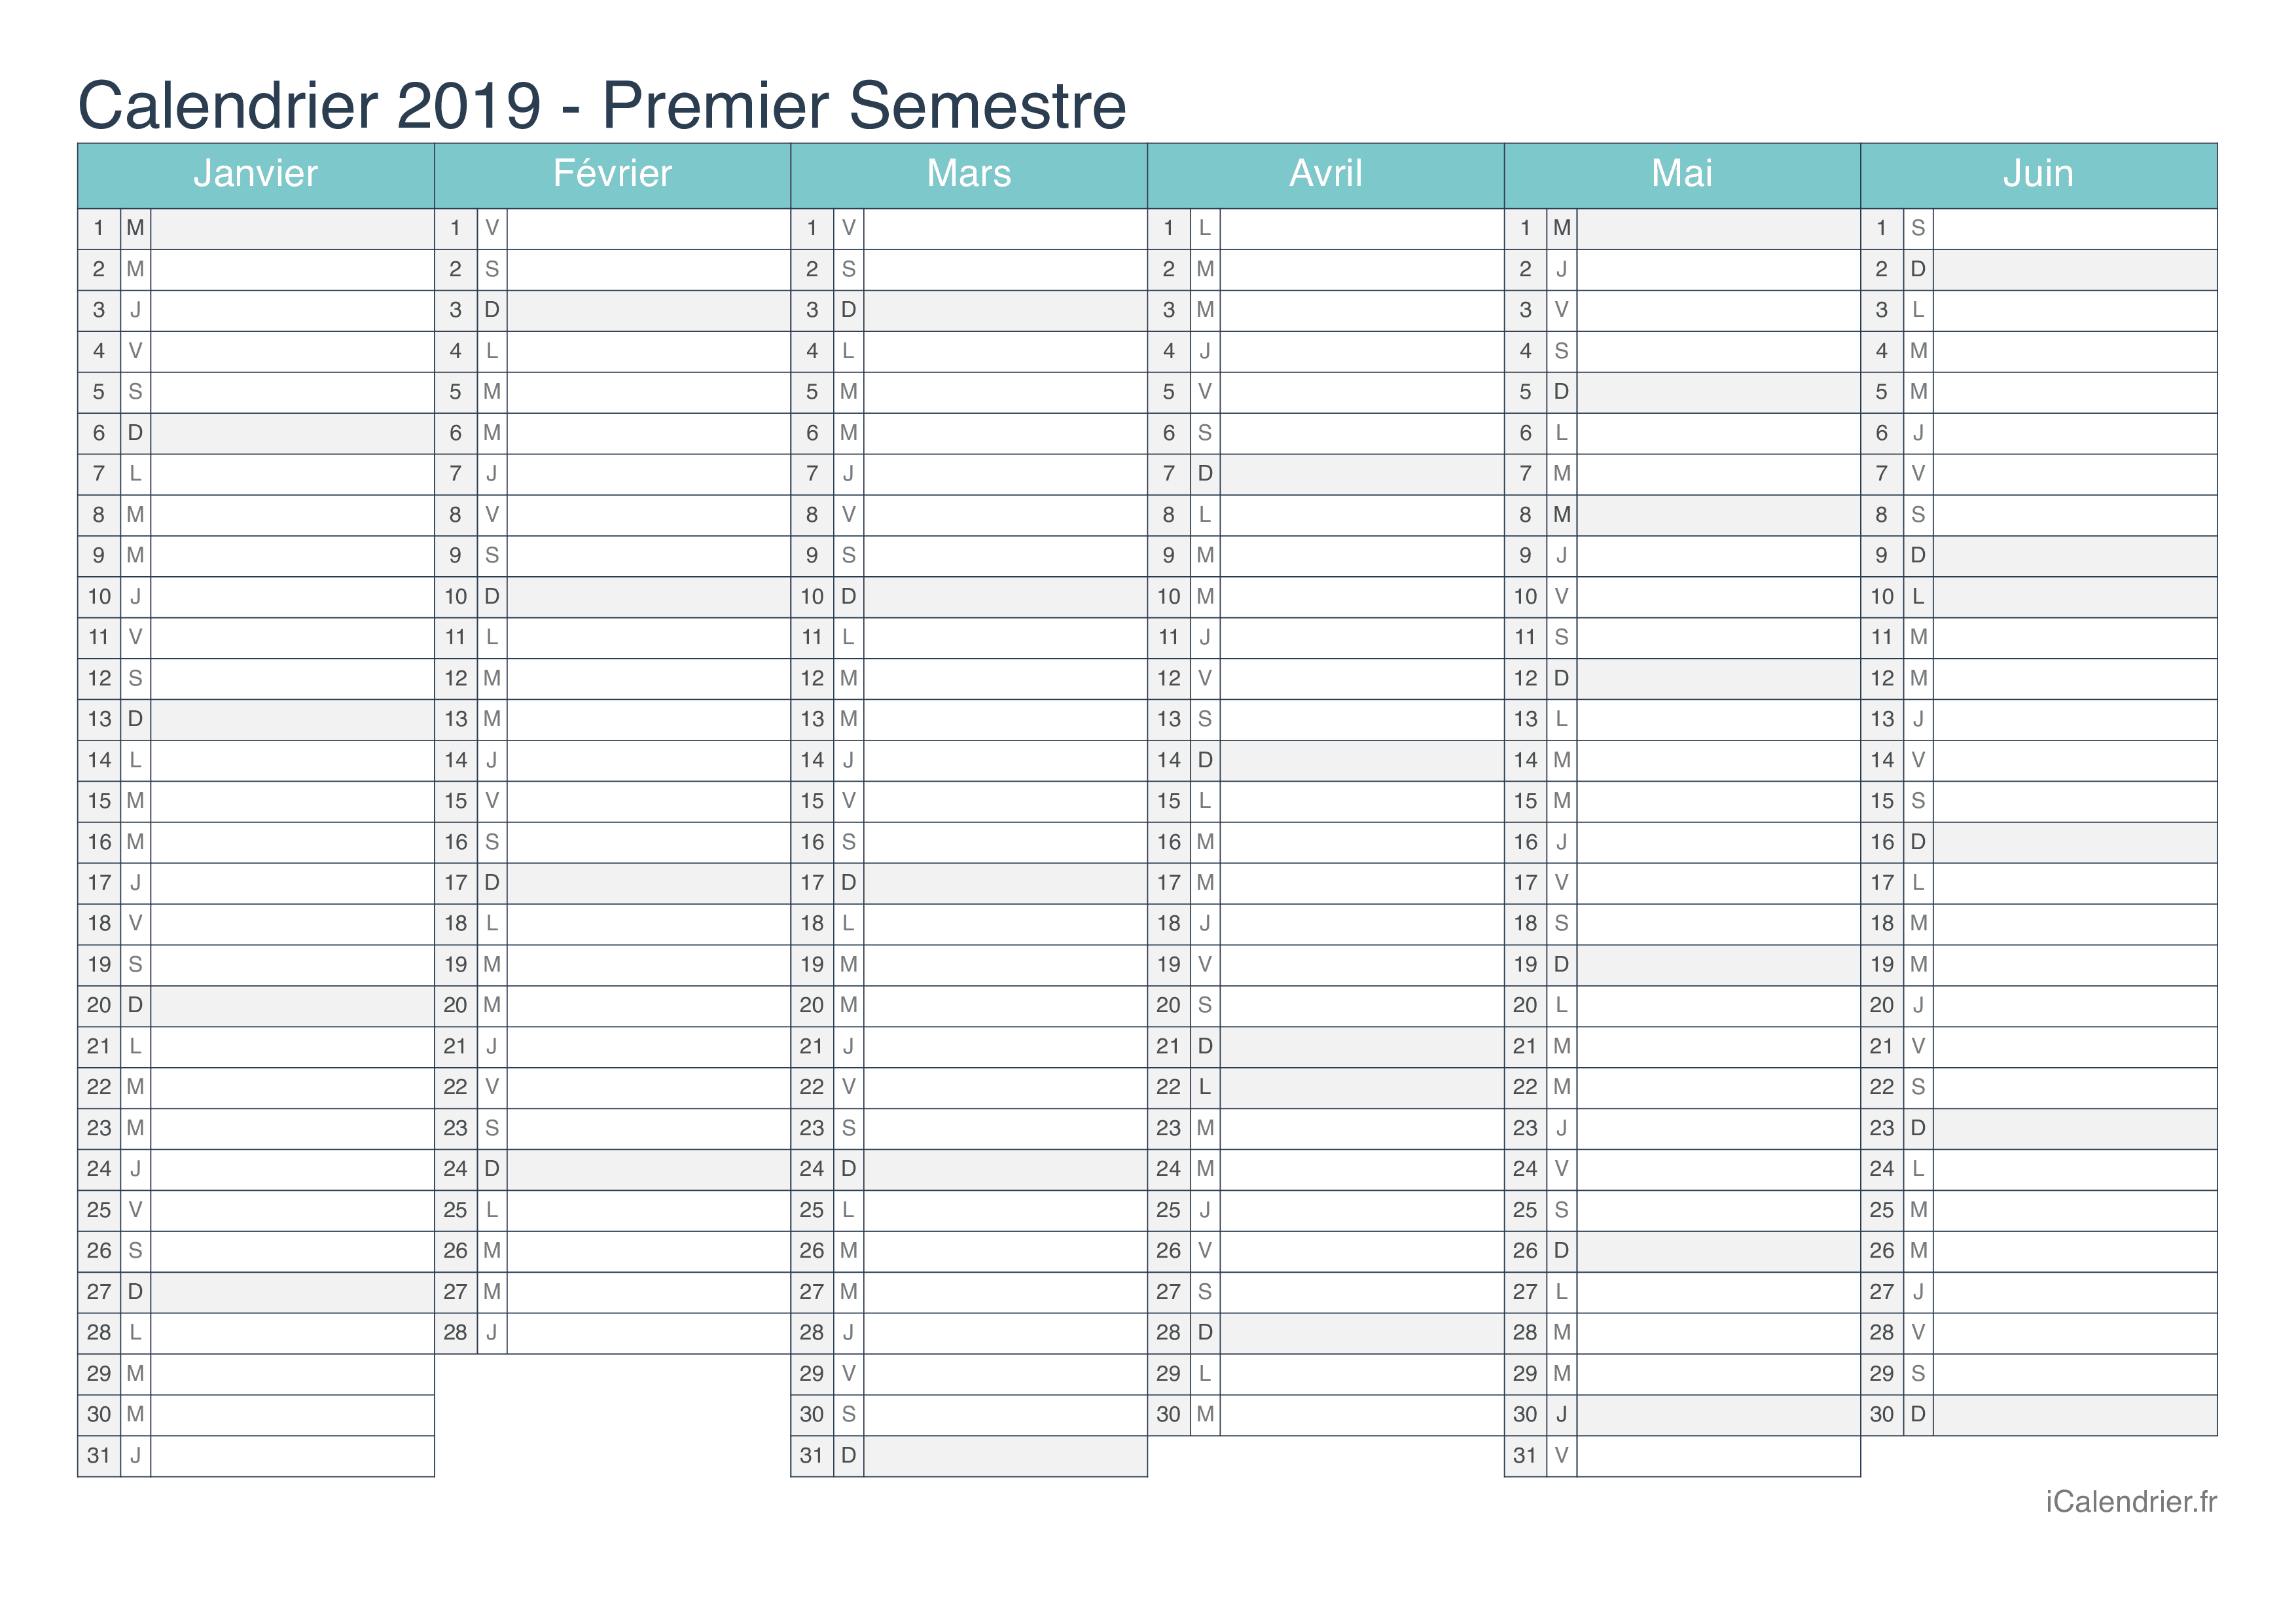 Calendrier par semestre 2019 - Turquoise